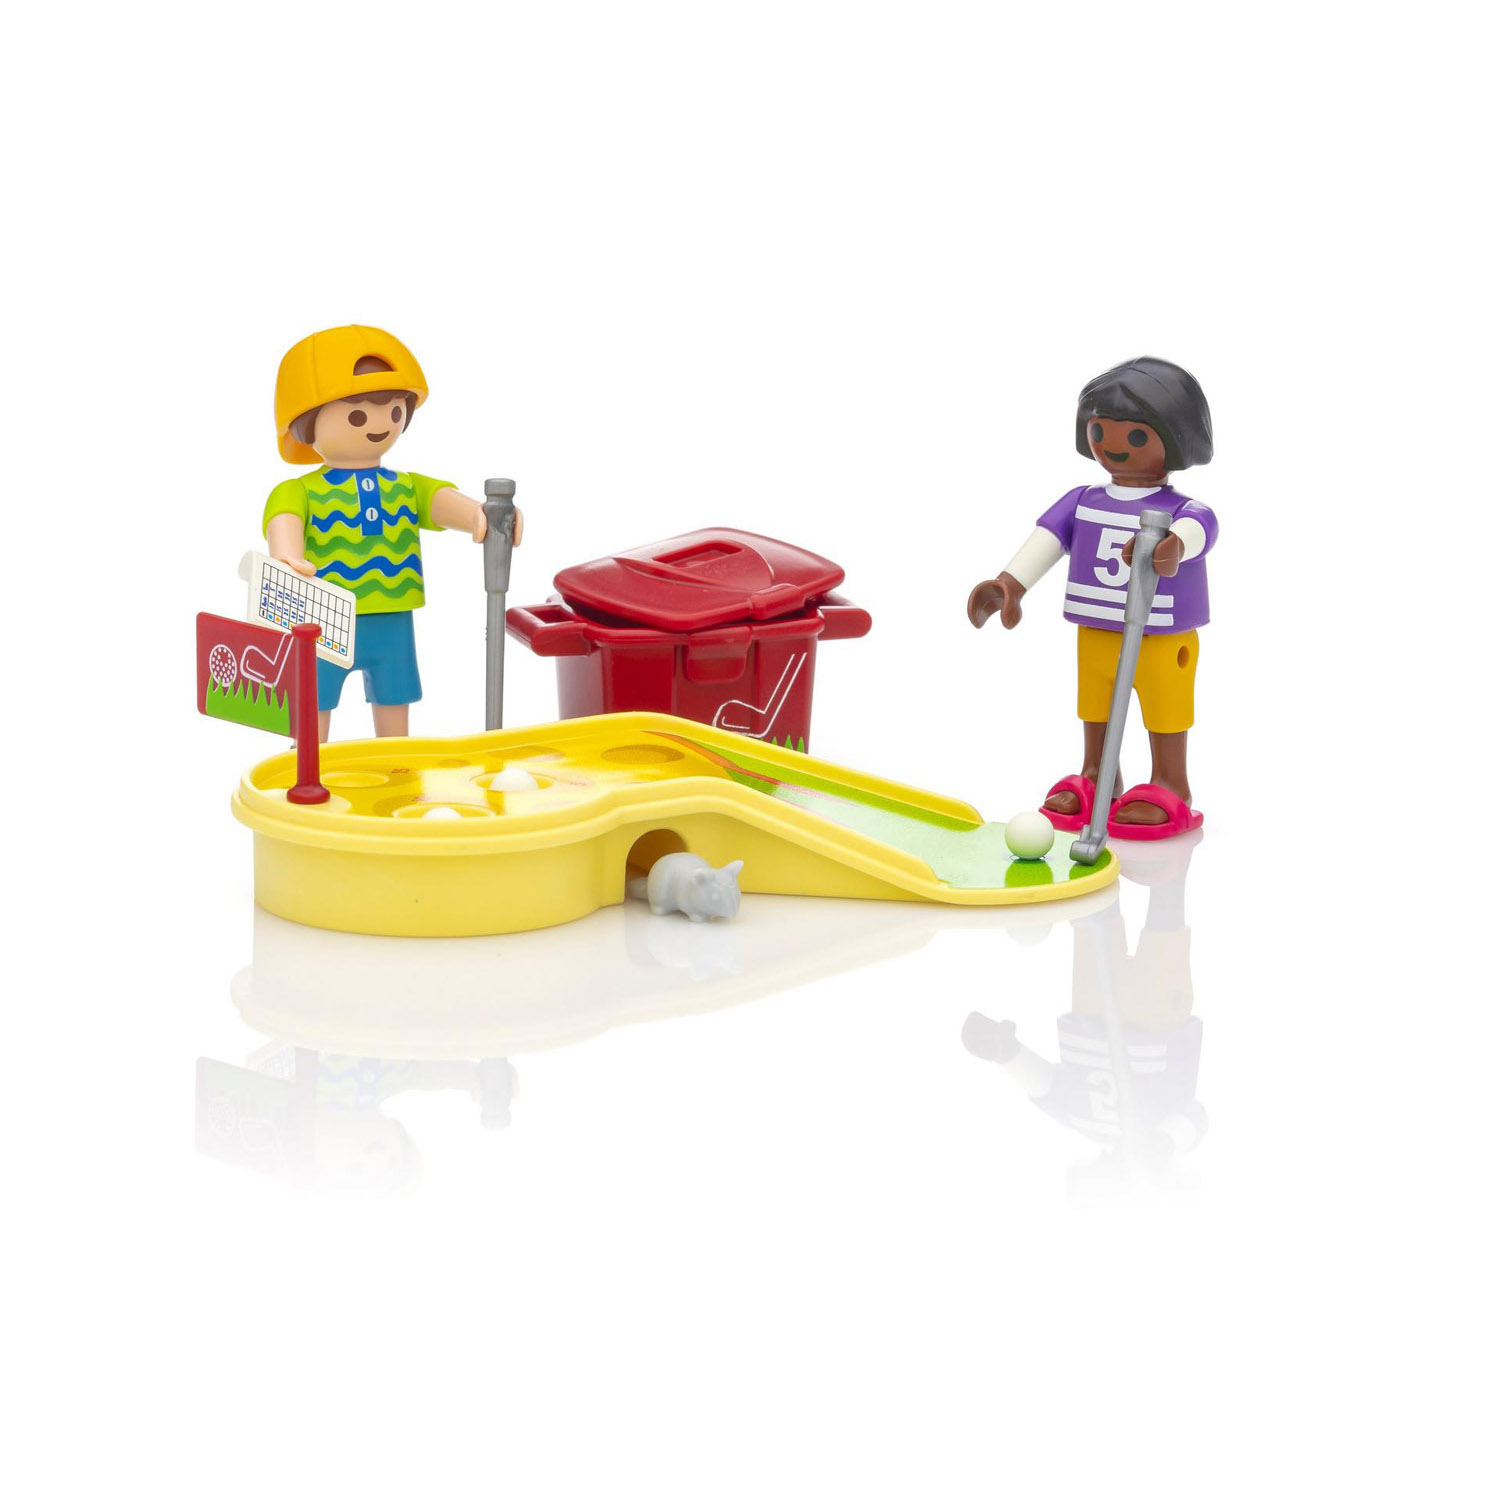 Playmobil Конструктор Играющие дети в минигольф 9439pm - фото 3